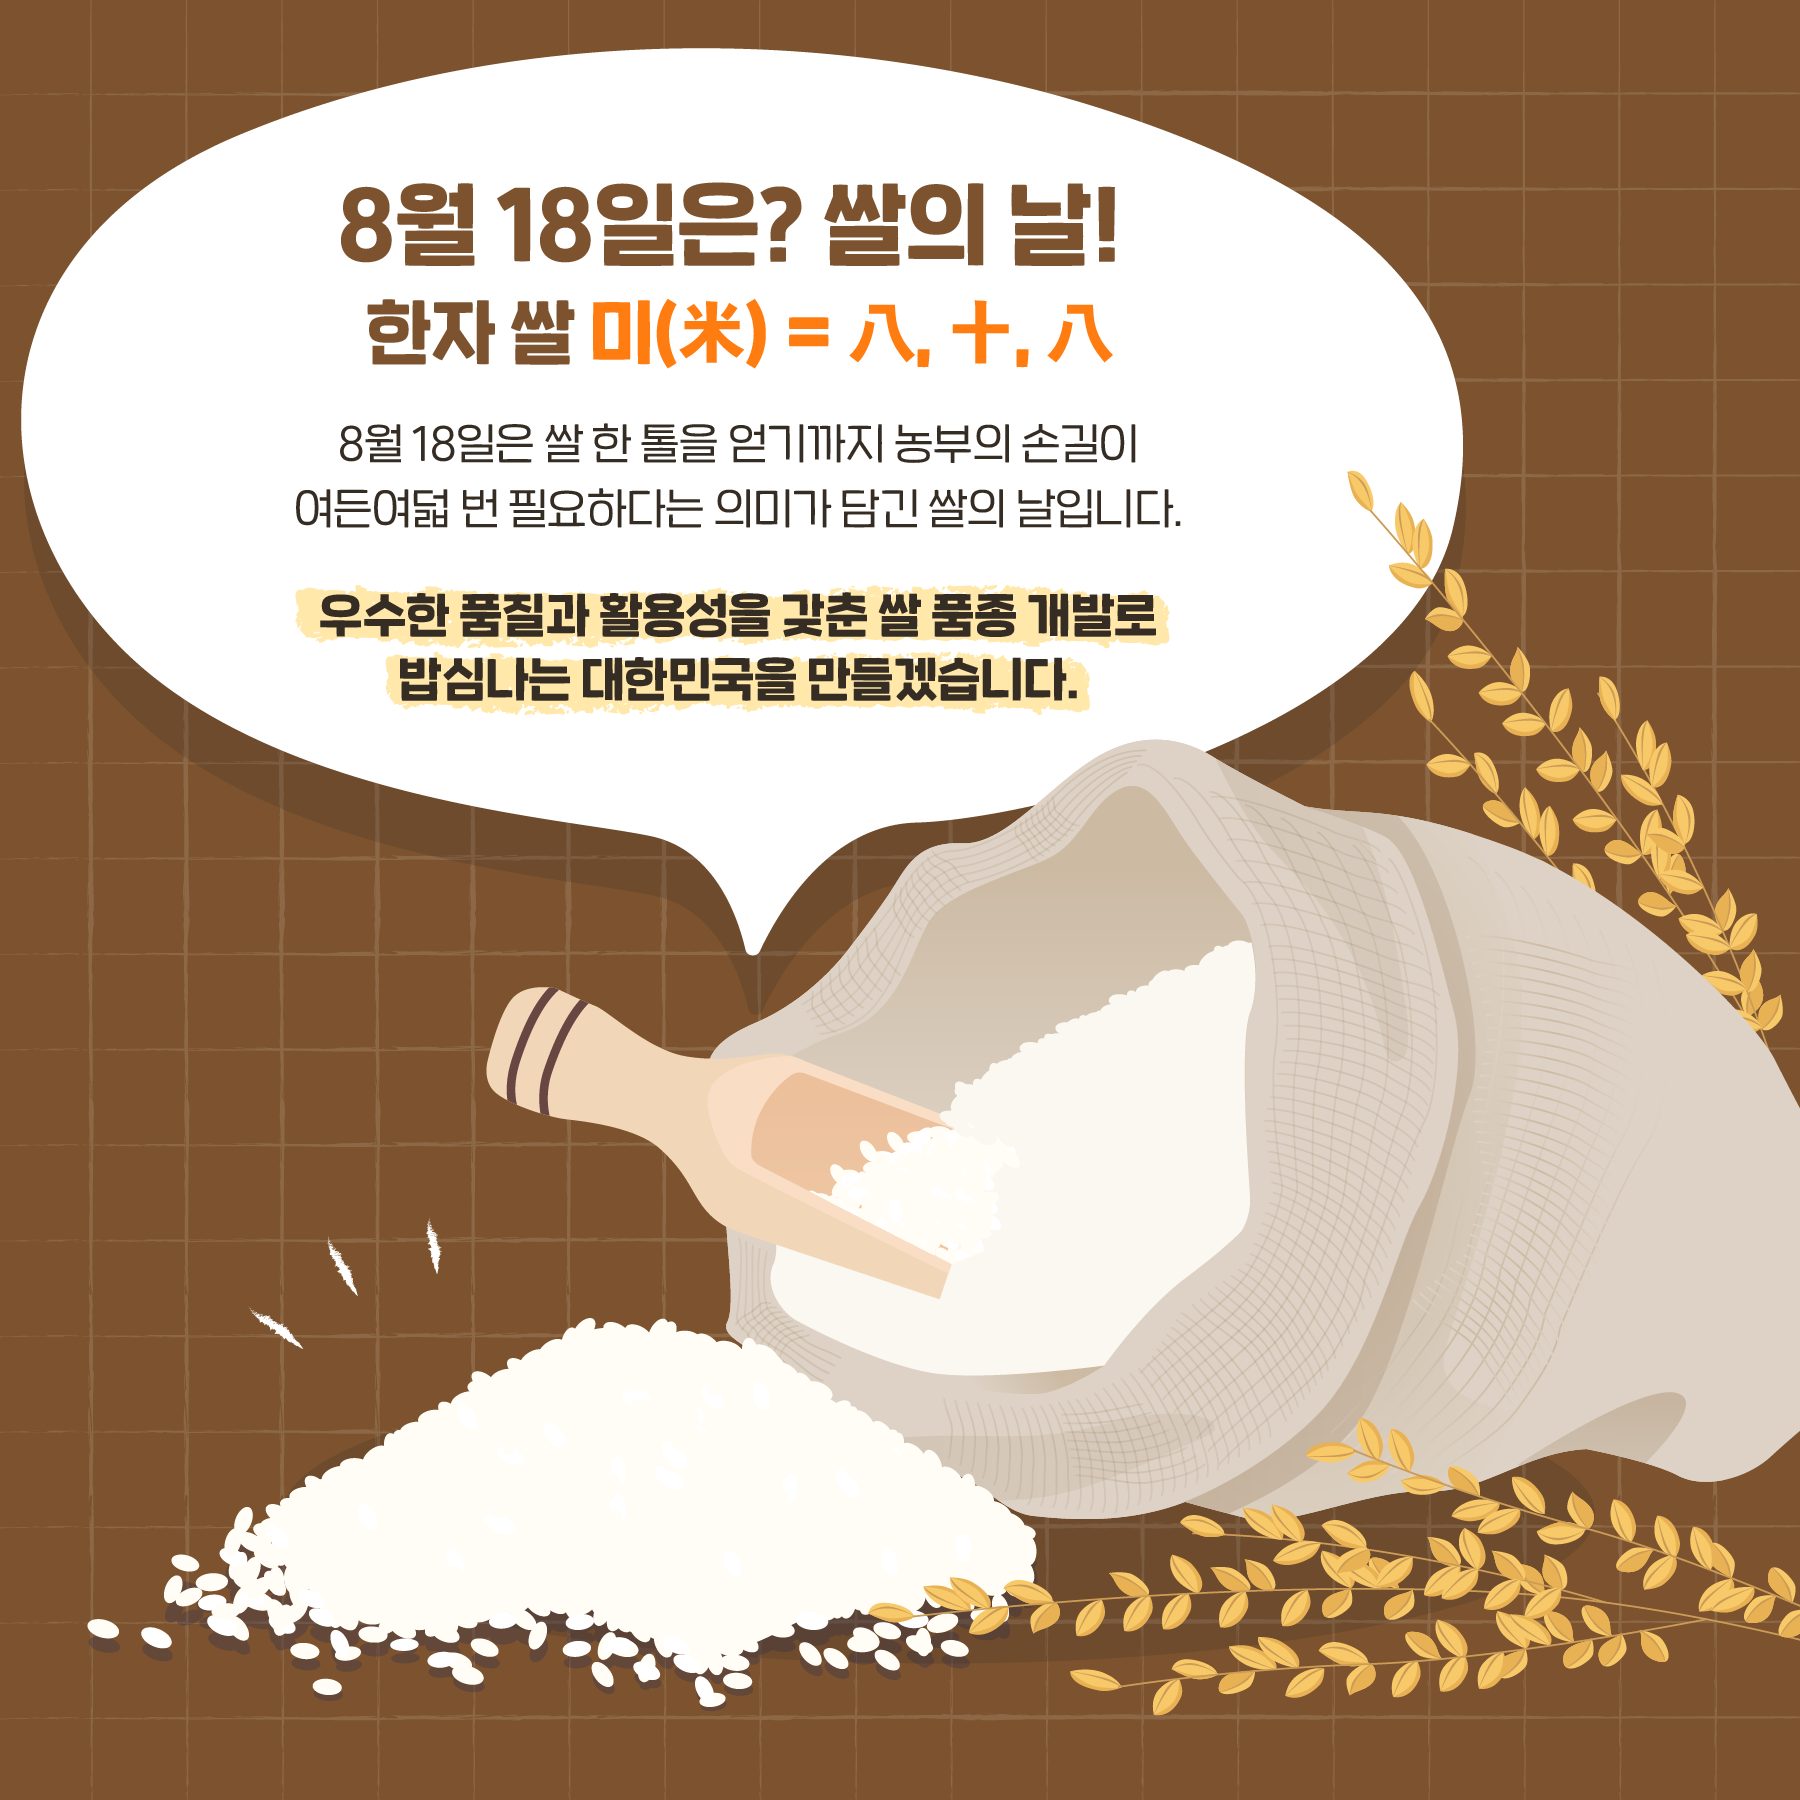 8월 18일은? 쌀의 날! 8월 18일은 쌀 한톨을 얻기까지 농부의 손길이 여든여덟 번 필요하다는 의미가 담긴 쌀입니다. 우수한 품질과 활용성을 갖춘 쌀 품종 개발로 밥심나는 대한민국을 만들겠습니다.